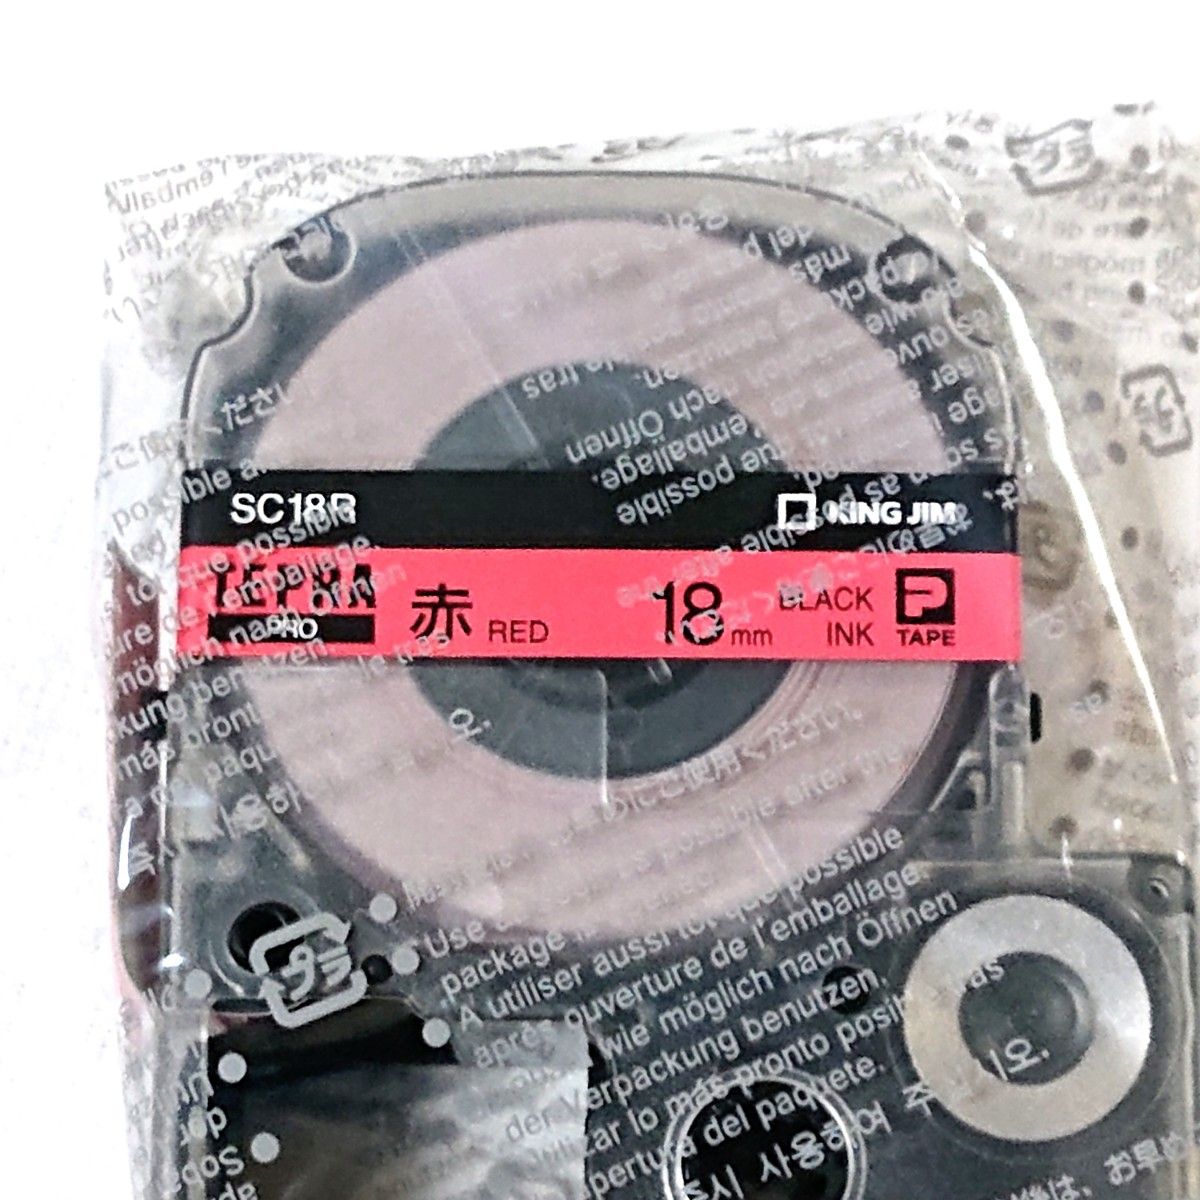 テプラテープ キングジム テプラPRO 純正品18㎜のメタリック【金】・パール【青】・白・赤の4色セット